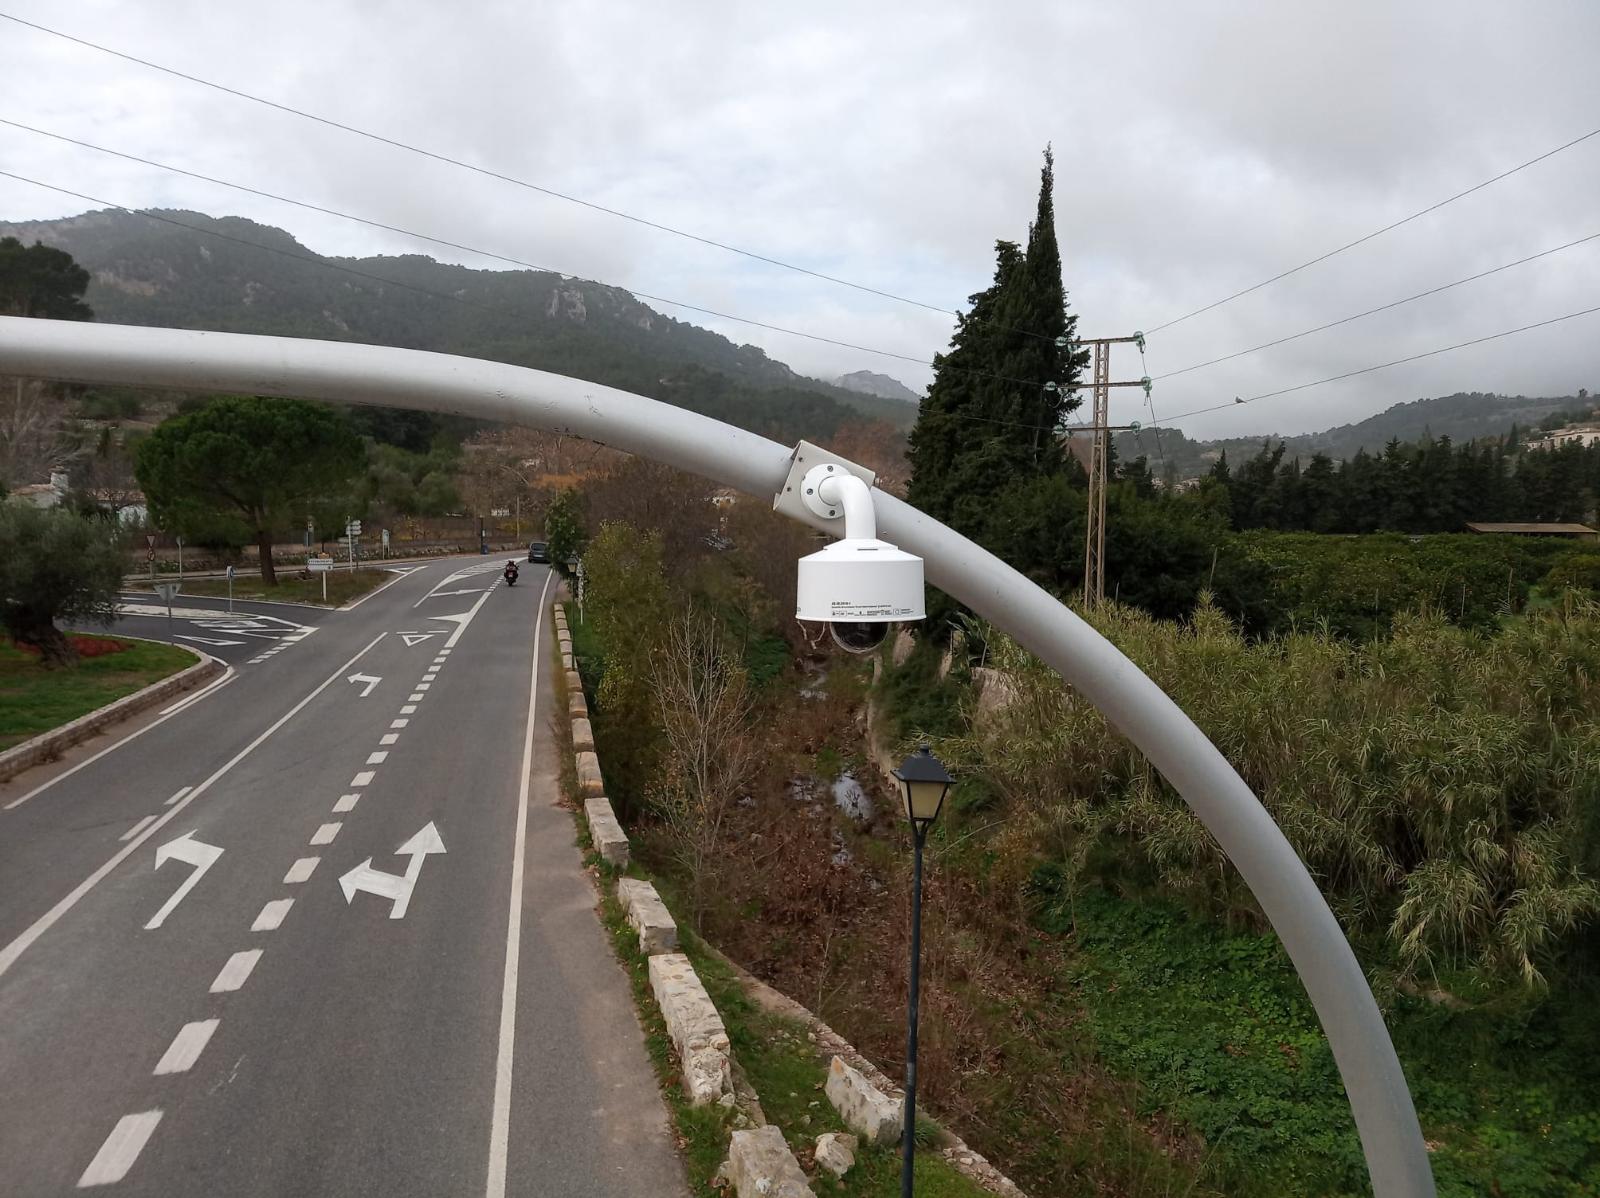 Desset càmeres captaran la velocitat, el soroll i les matrícules dels vehicles a la Serra i remetran la informació dels infractors a la DGT